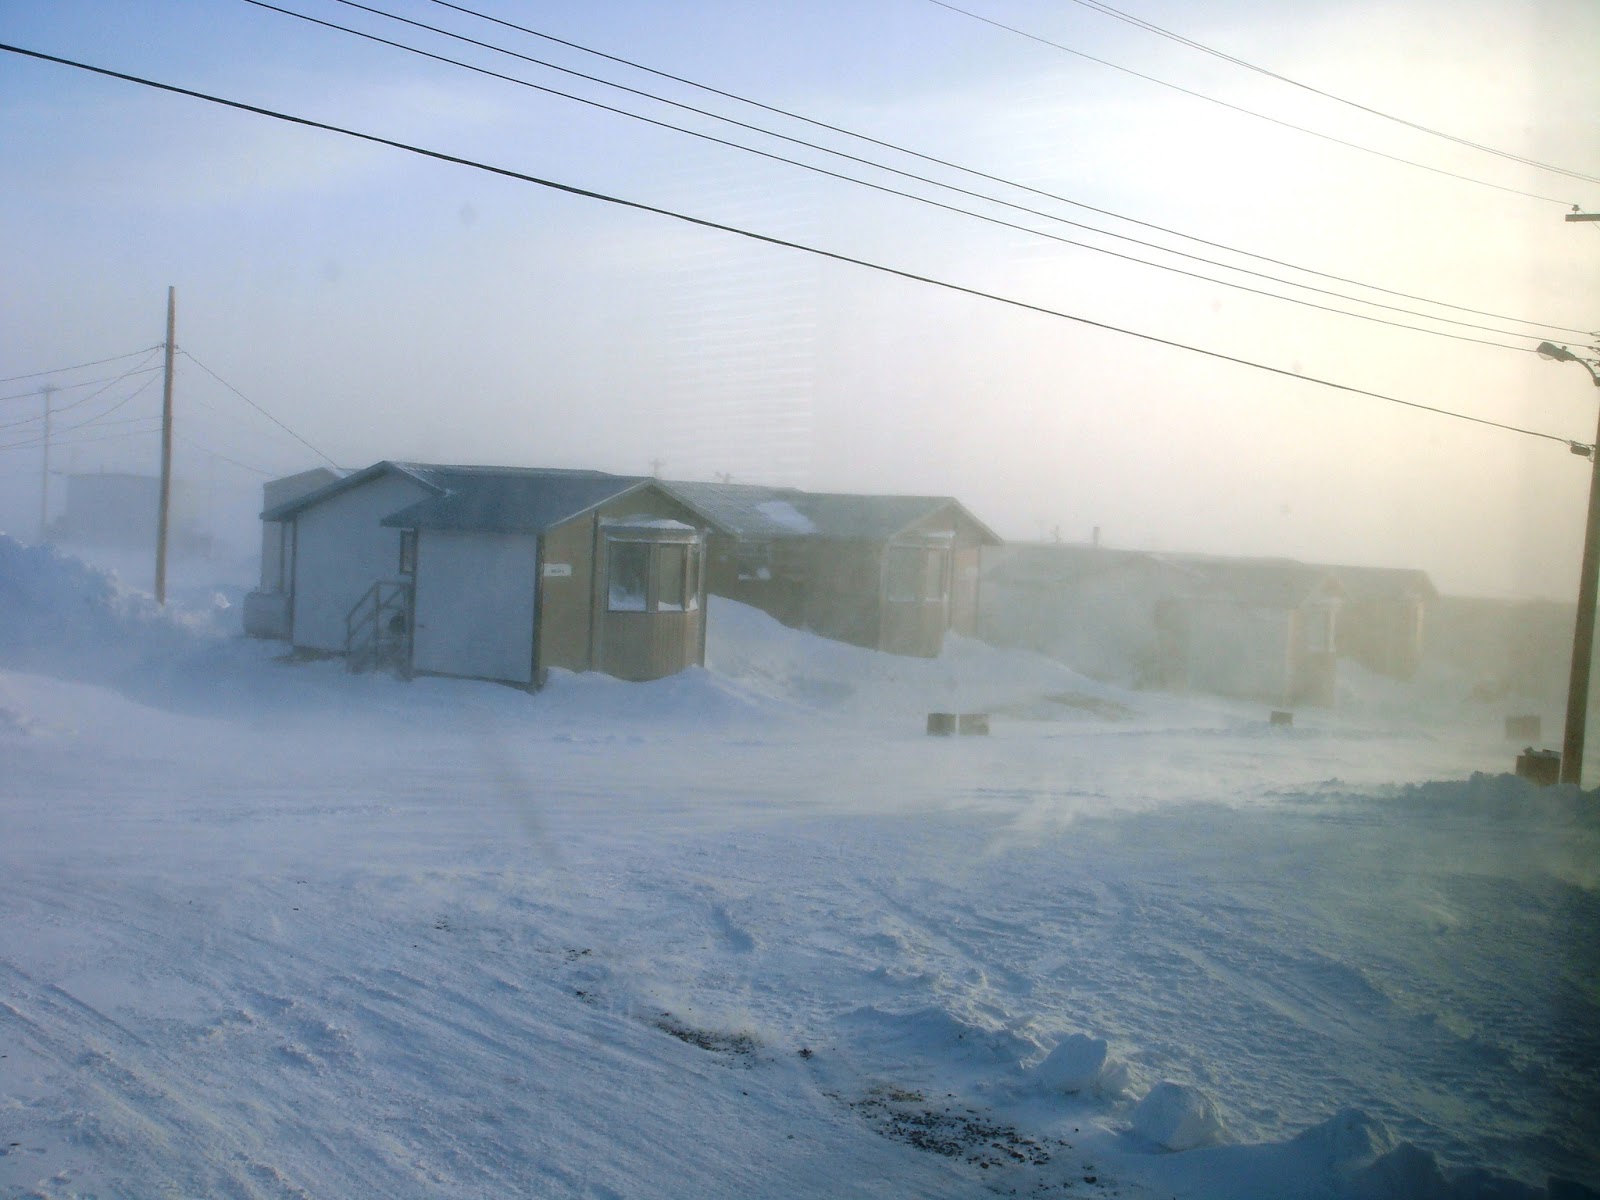 Chilling in Nunavut: Blizzard Wednesdays